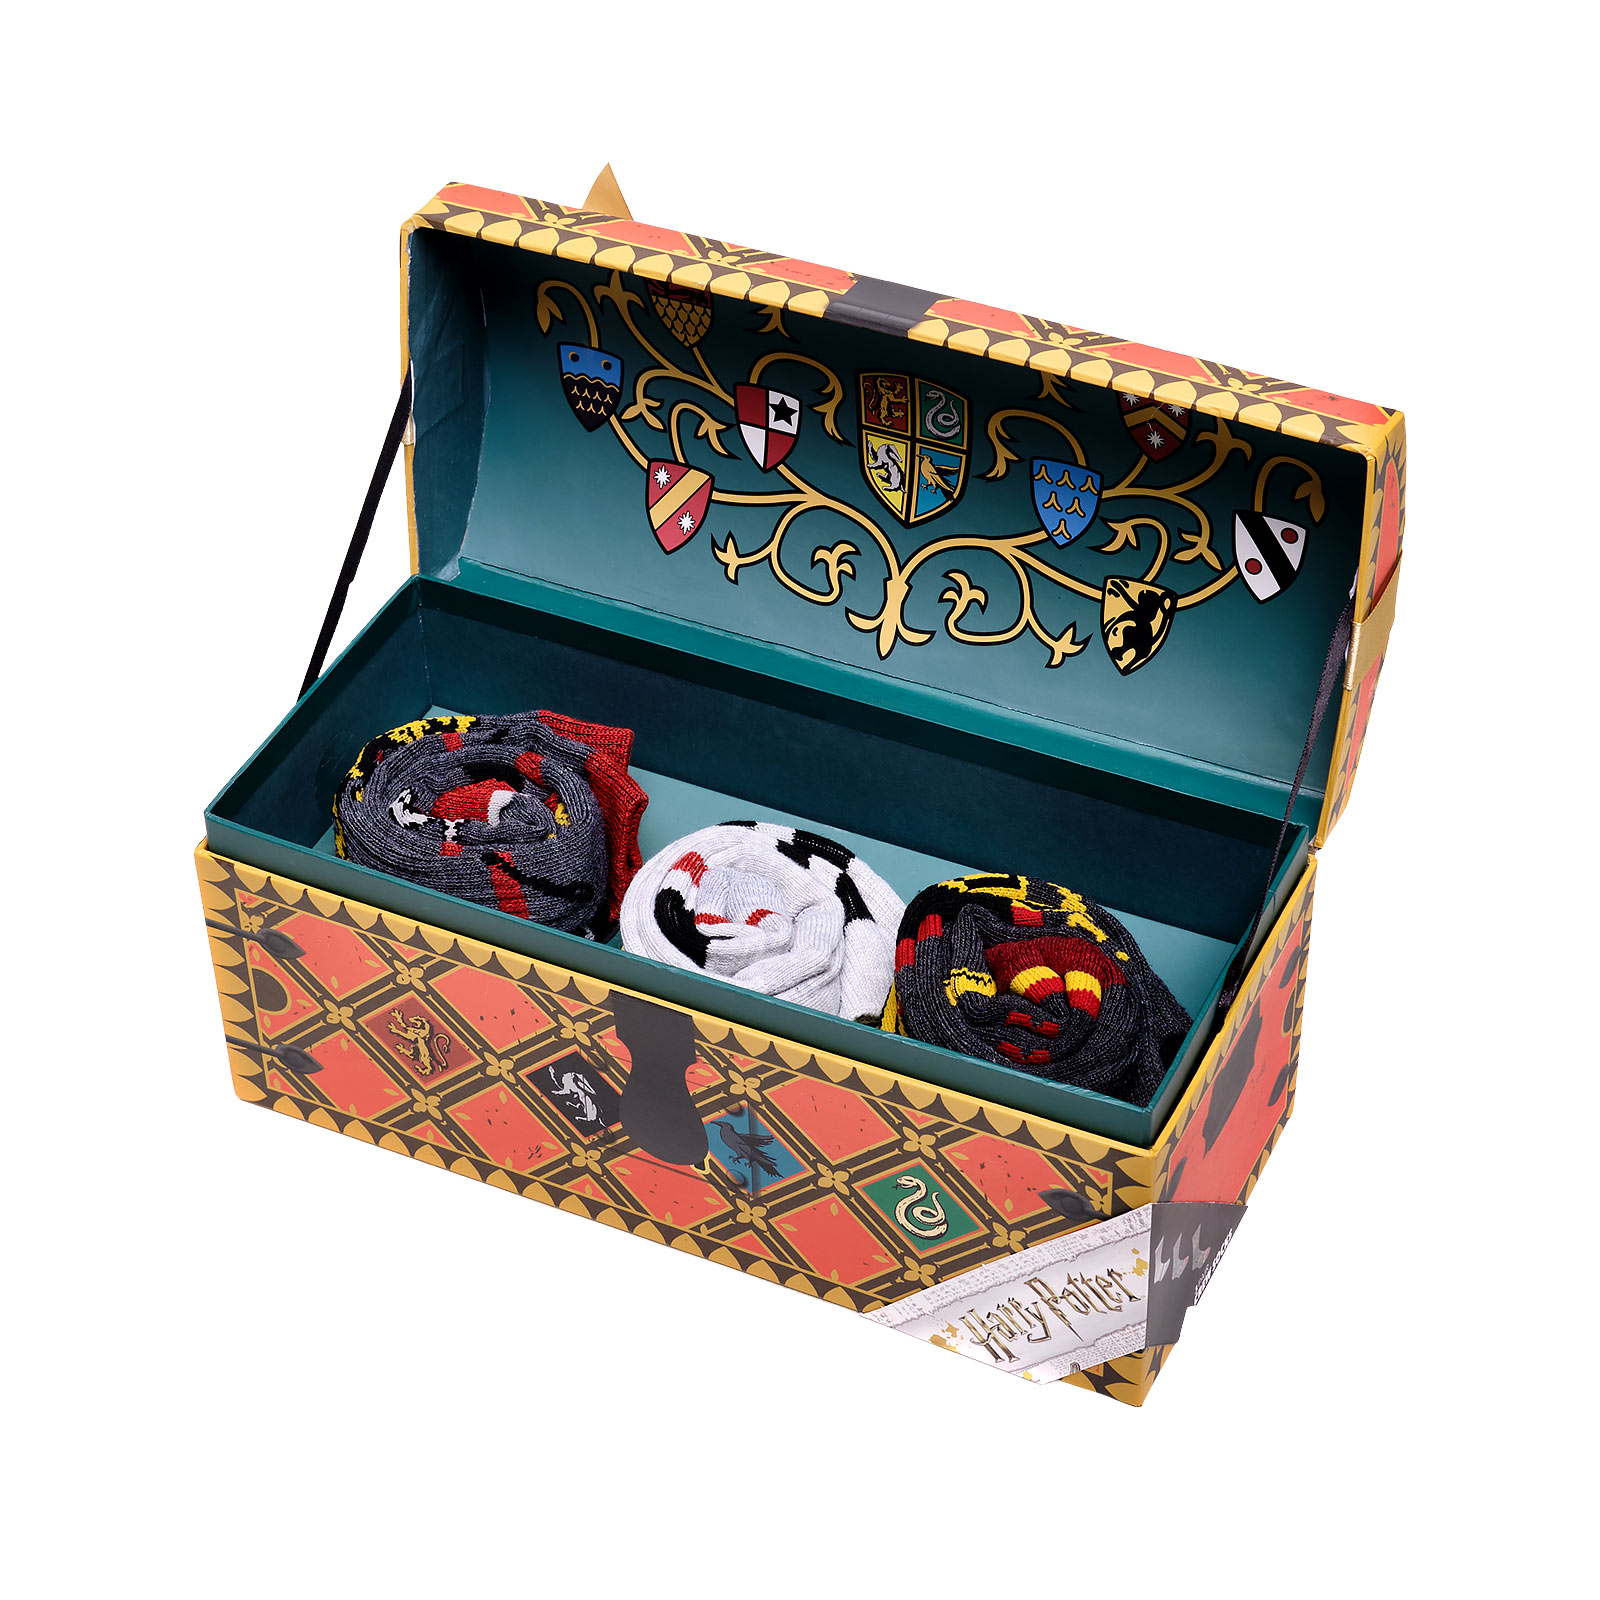 Harry Potter - 3 Pair Socks Set in Gift Box